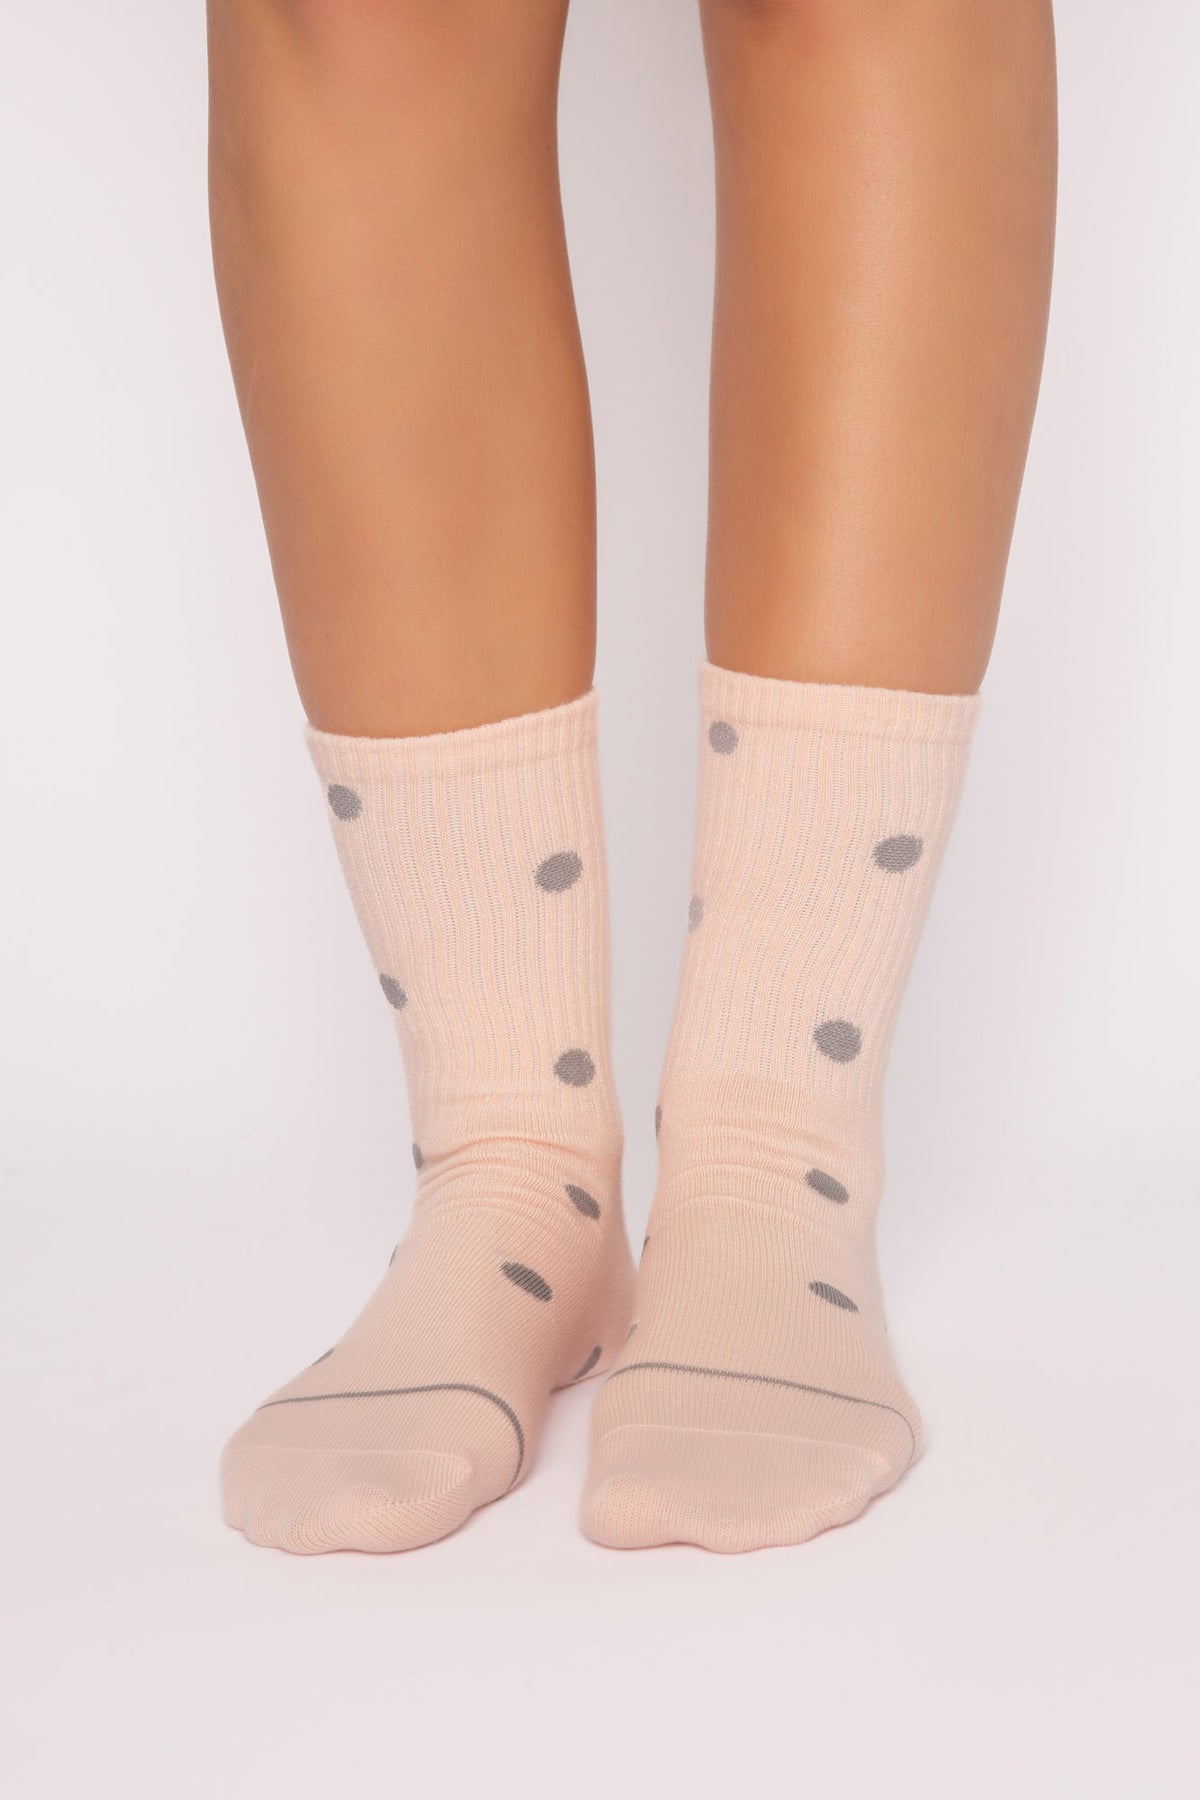 PJ Salvage Pink Socks